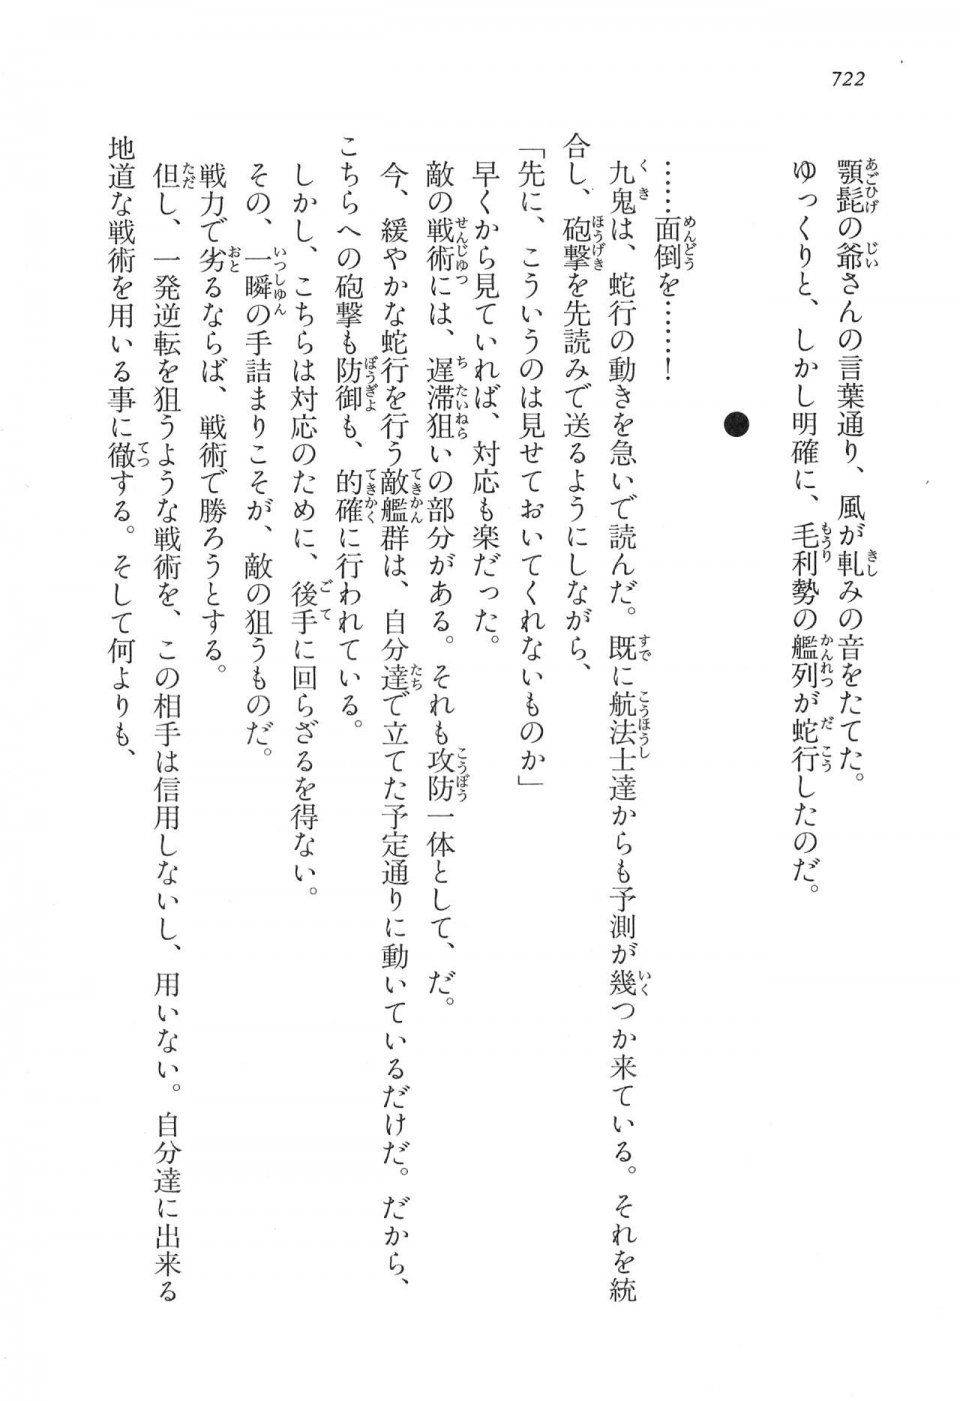 Kyoukai Senjou no Horizon LN Vol 16(7A) - Photo #722